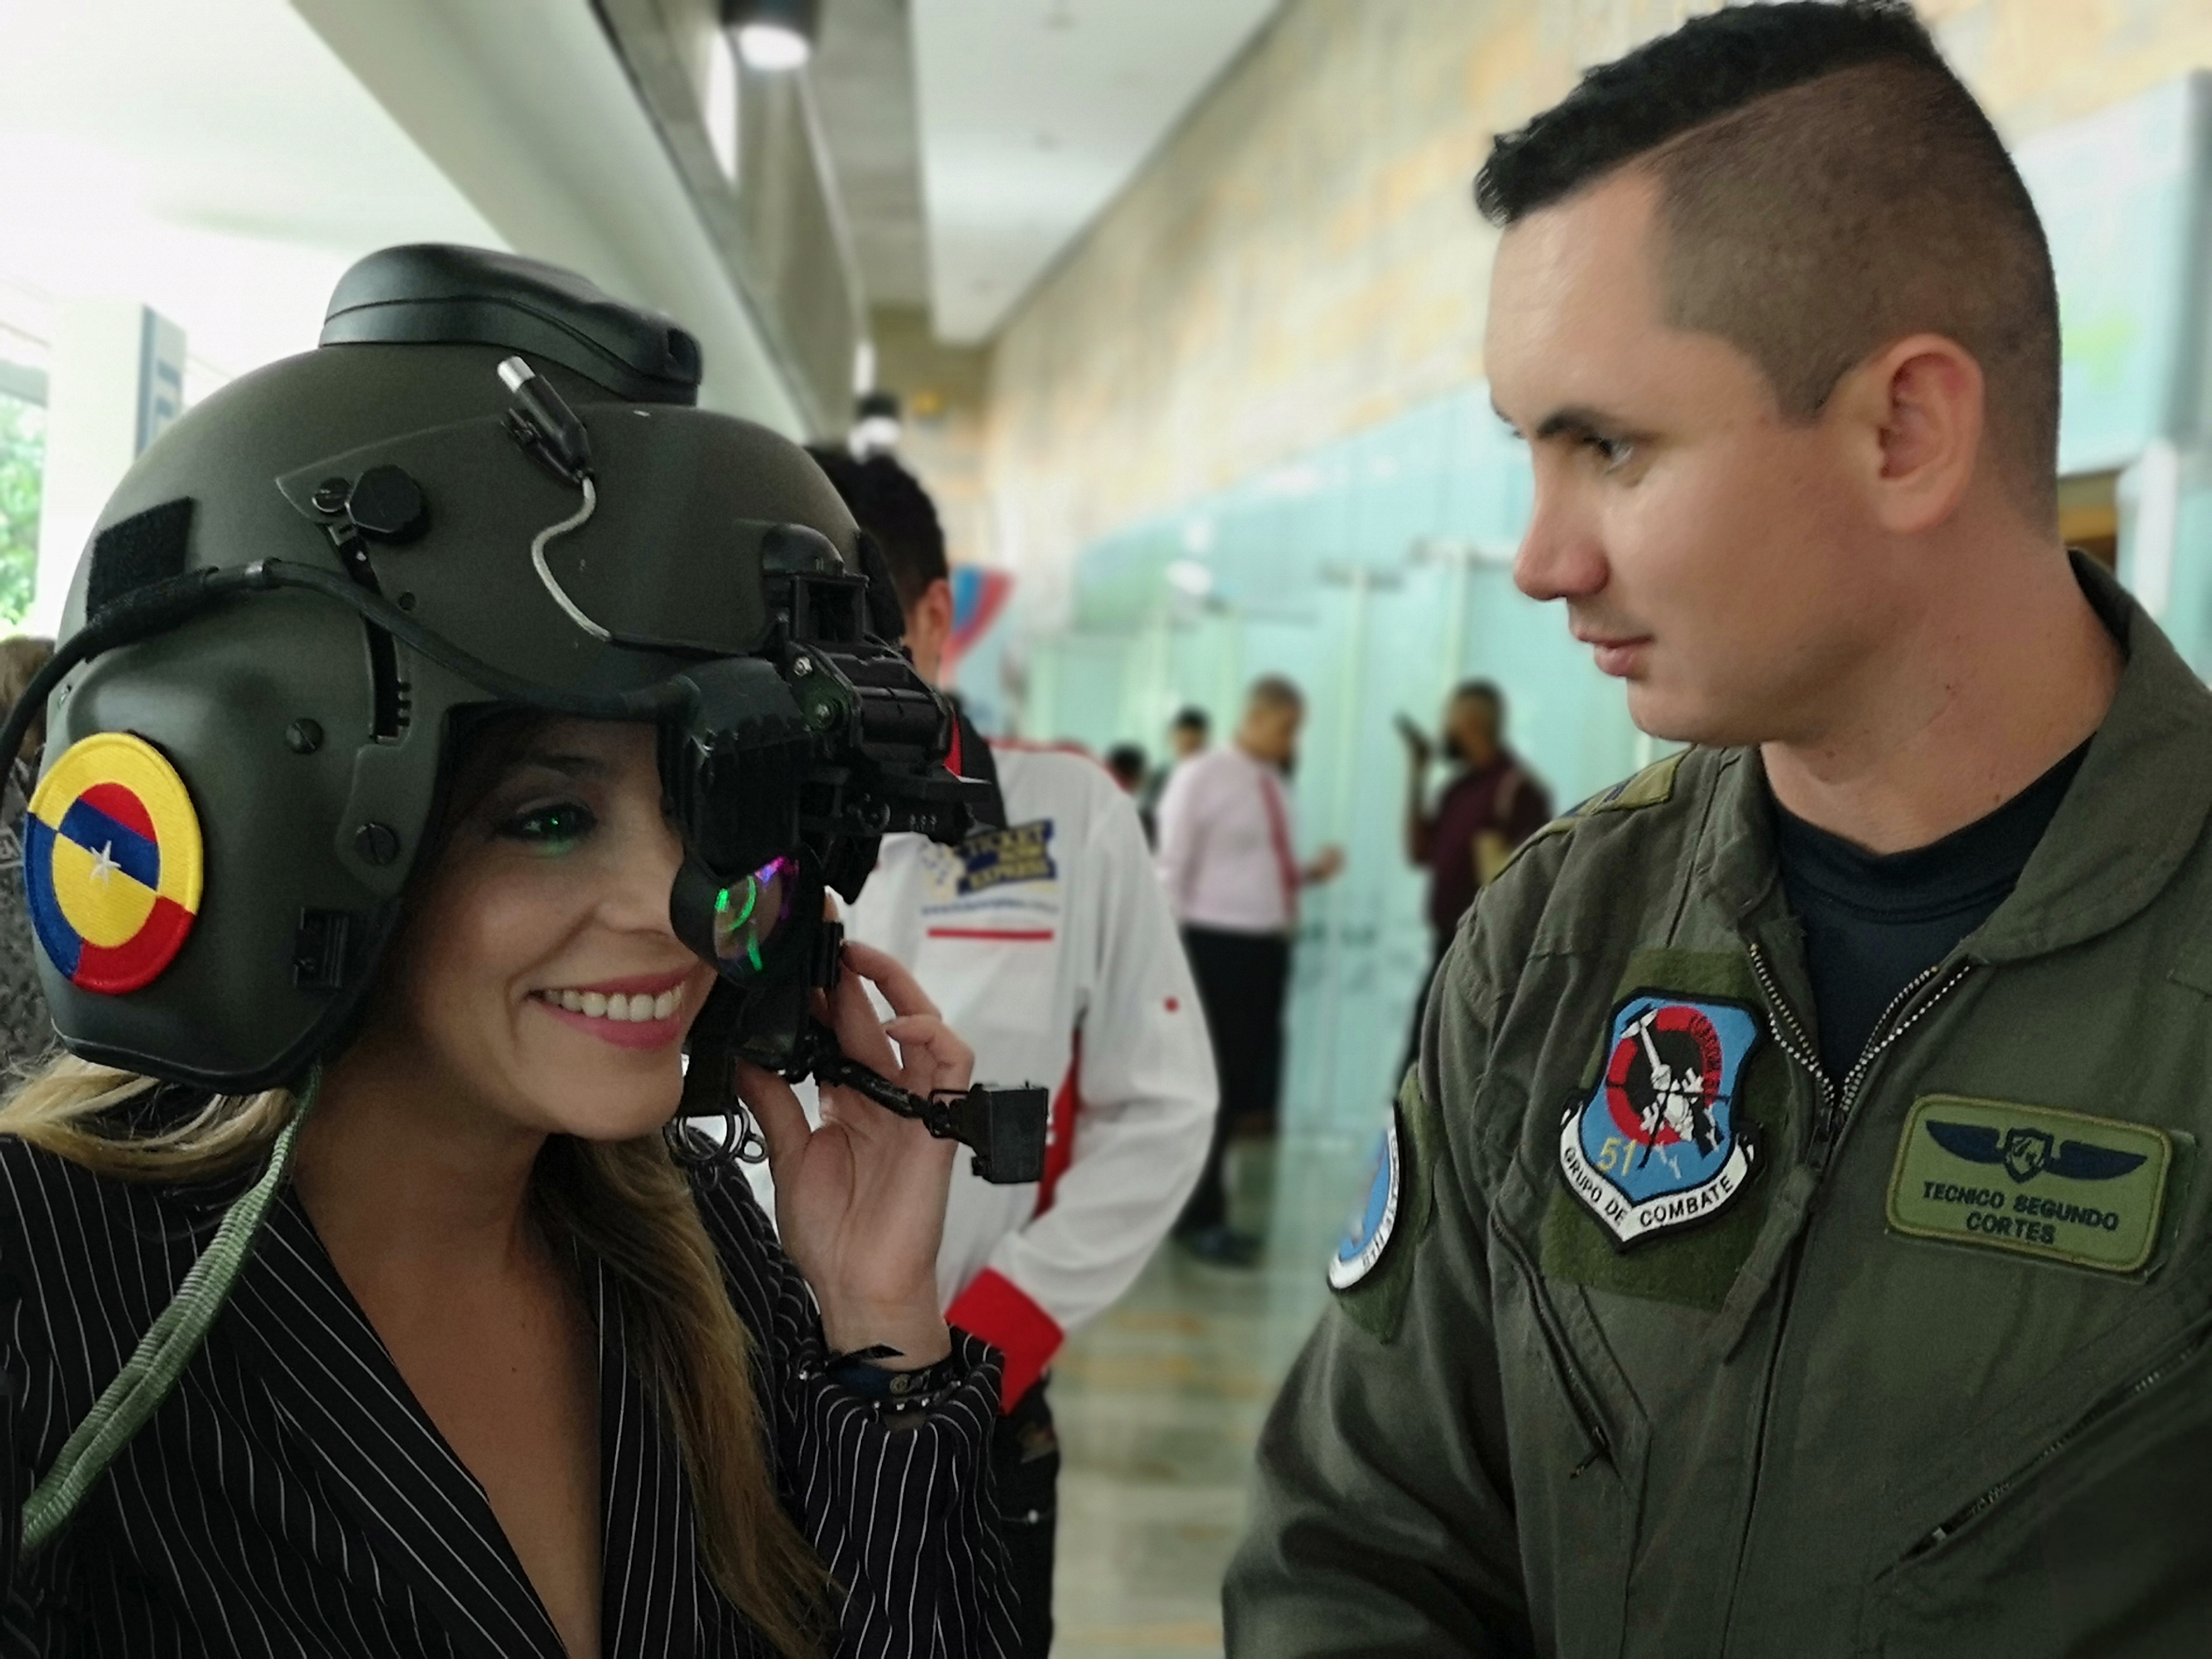 Tecnología empleada por la Fuerza Aérea Colombiana fue presentada en encuentro optométrico